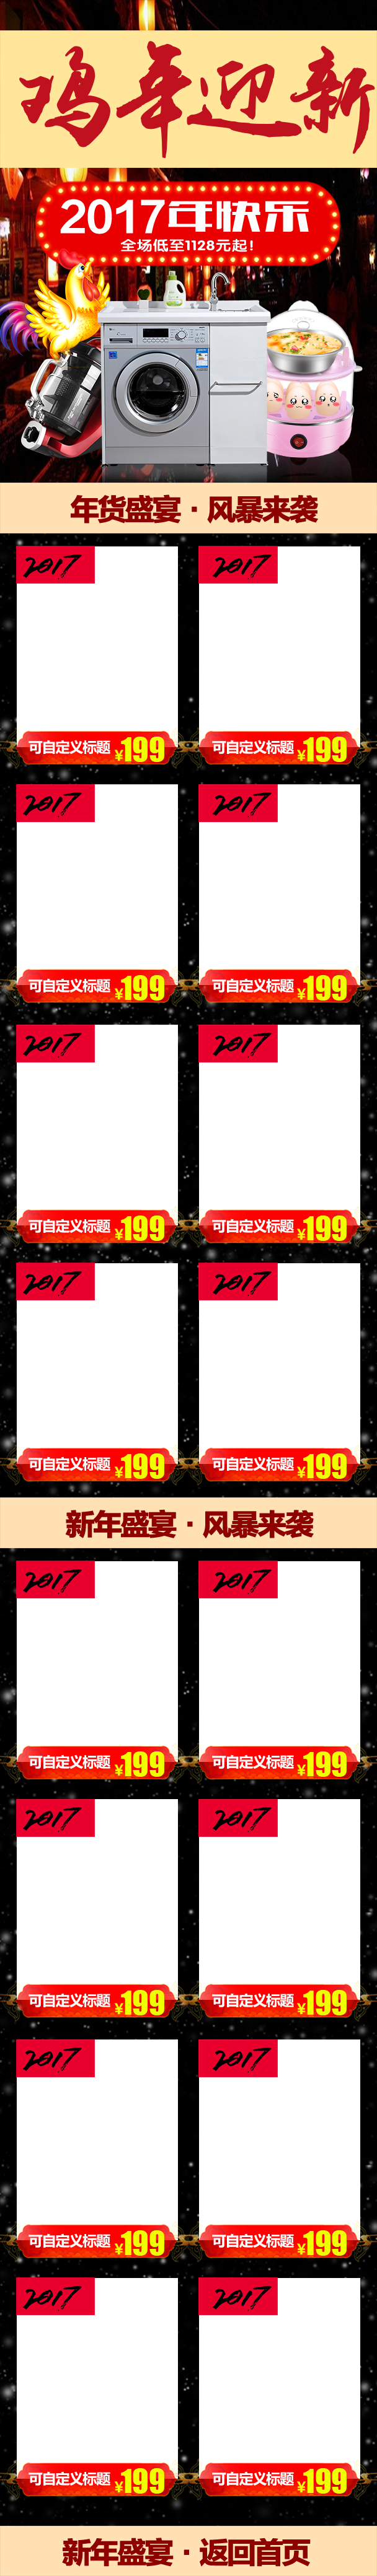 淘宝天猫年货节中国风电器手机端首页PSD模板